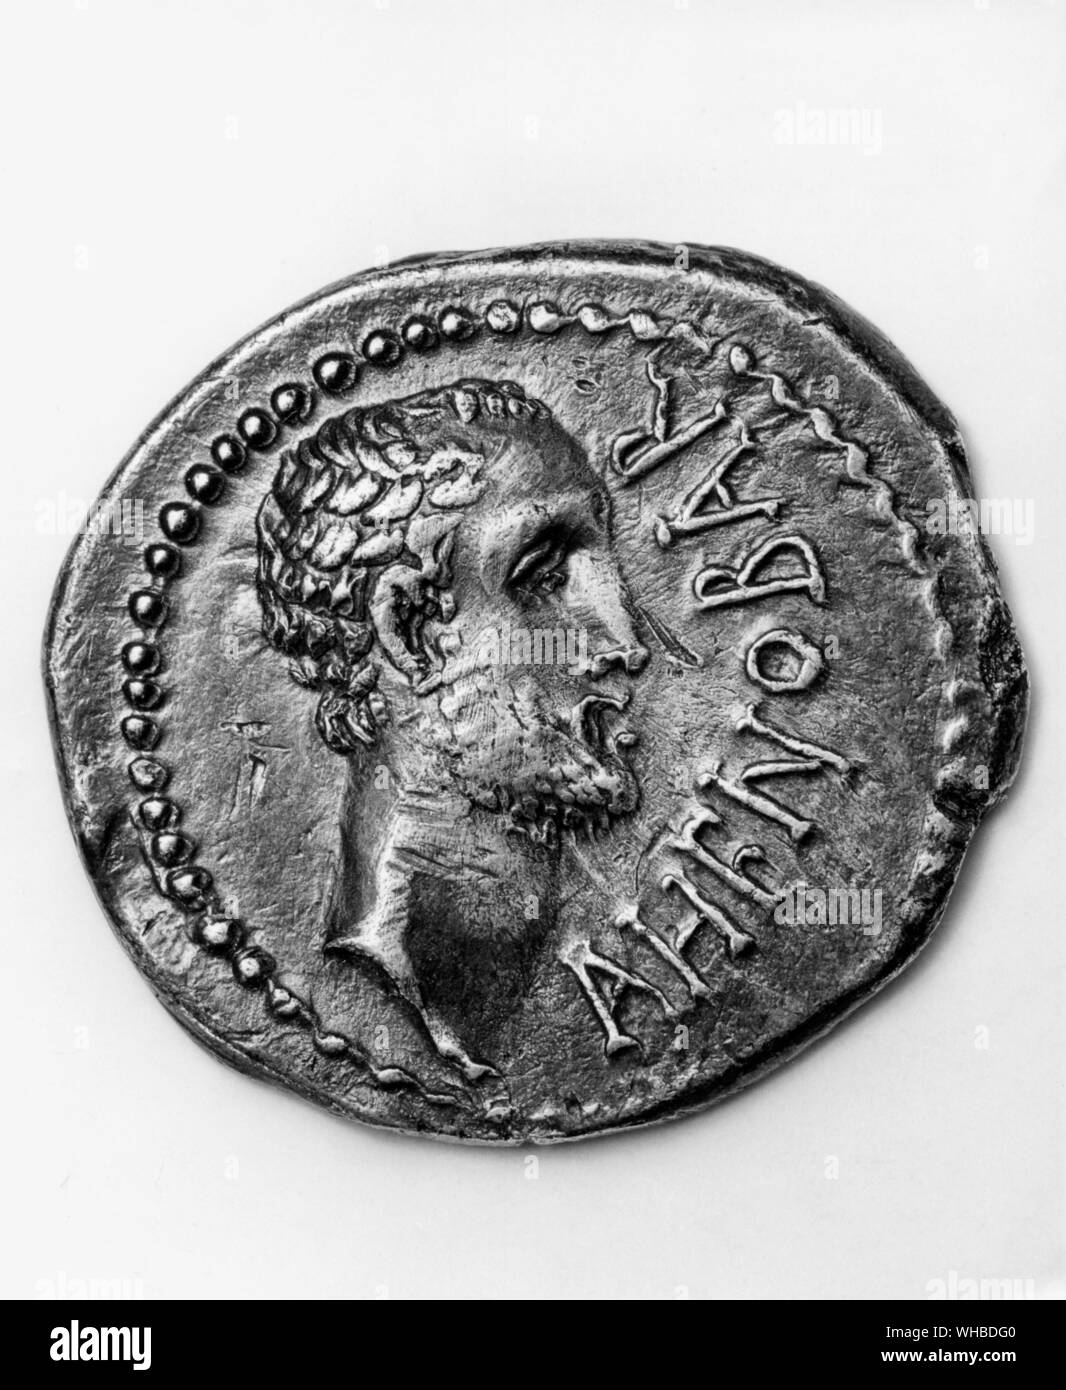 Gnaeus Domitius Ahenobarbus: römischer Statthalter von Bithynien 40 v. Chr. Konsul 32 v. Chr. - Münze zum Gedenken an seinen militärischen Sieg über Domitius Calvinus Stockfoto